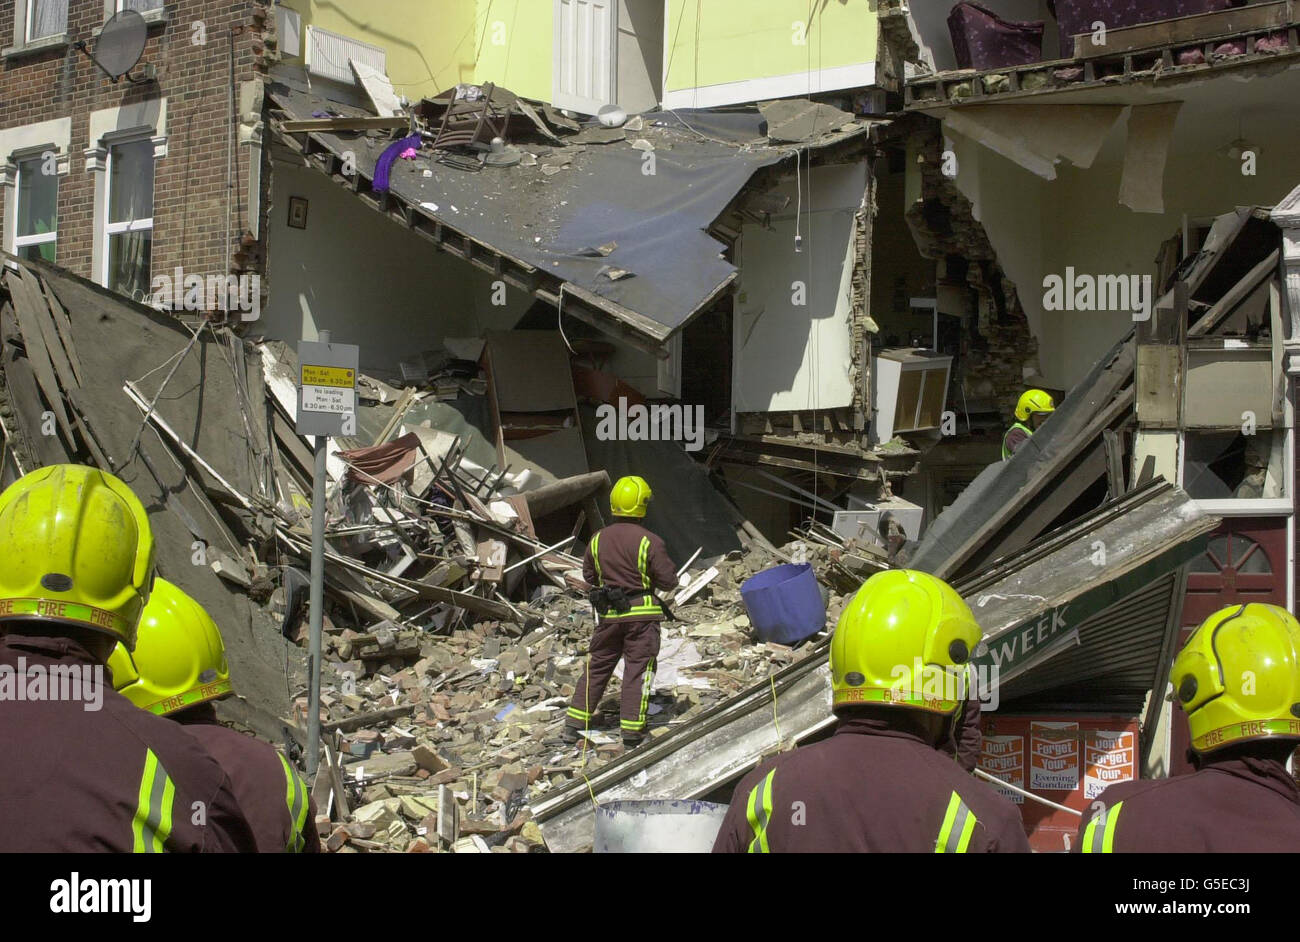 La scène dans un immeuble de trois étages d'appartements sur White Hart  Lane, dans le nord de Londres, après s'être effondrée avec jusqu'à sept  personnes craignaient d'être piégées sous les décombres. Les